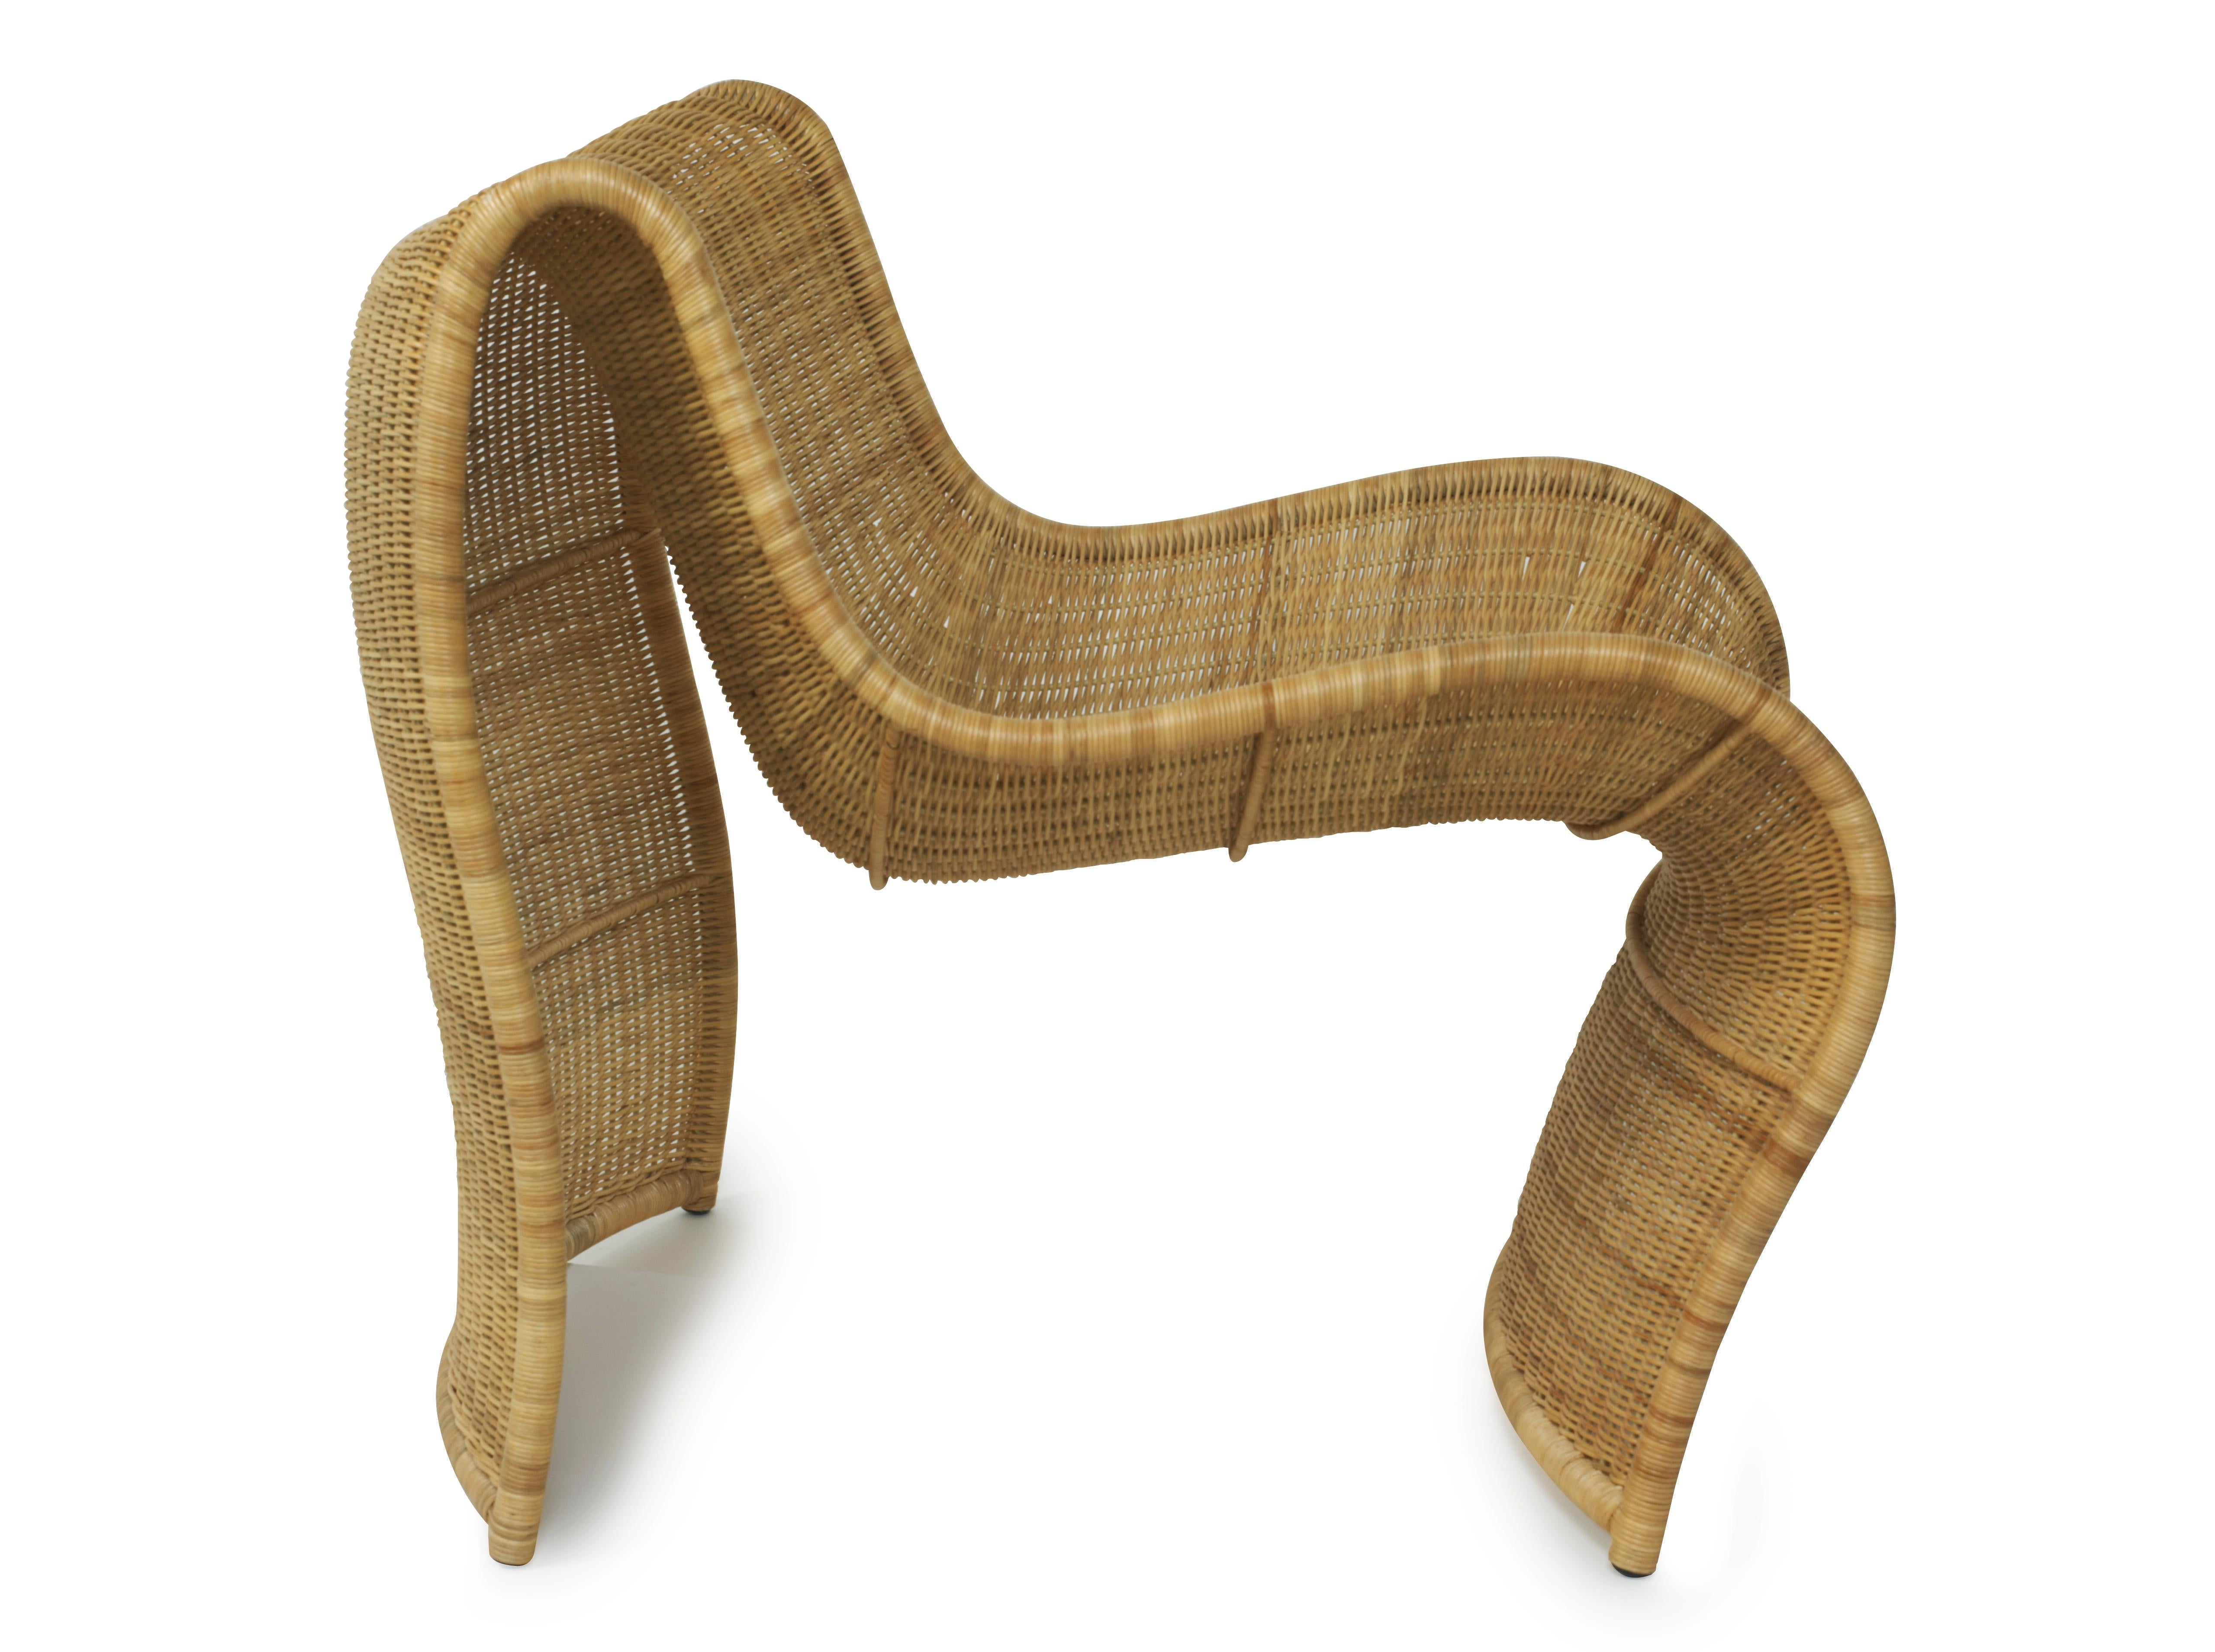 La nouvelle chaise Lola est un remarquable témoignage de la beauté des matériaux naturels et de l'expertise artisanale. Des artisans qualifiés des Philippines tressent méticuleusement la chaise en osier, qui a été présentée d'une manière moderne et